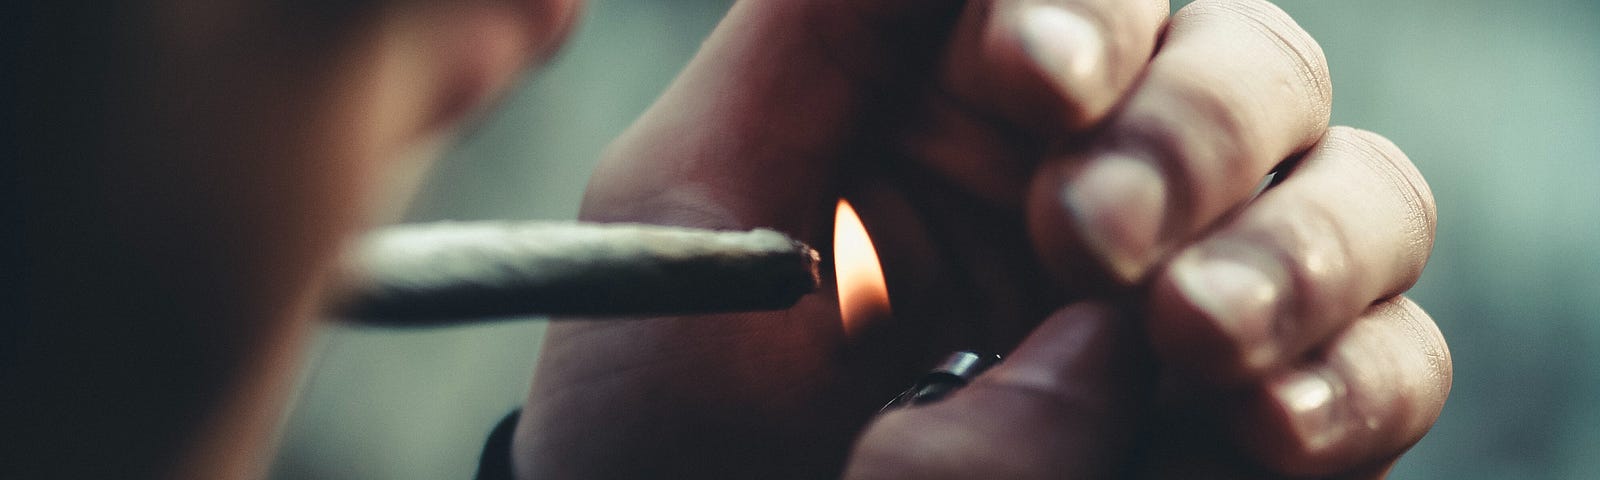 Young man lighting a marijuana joint